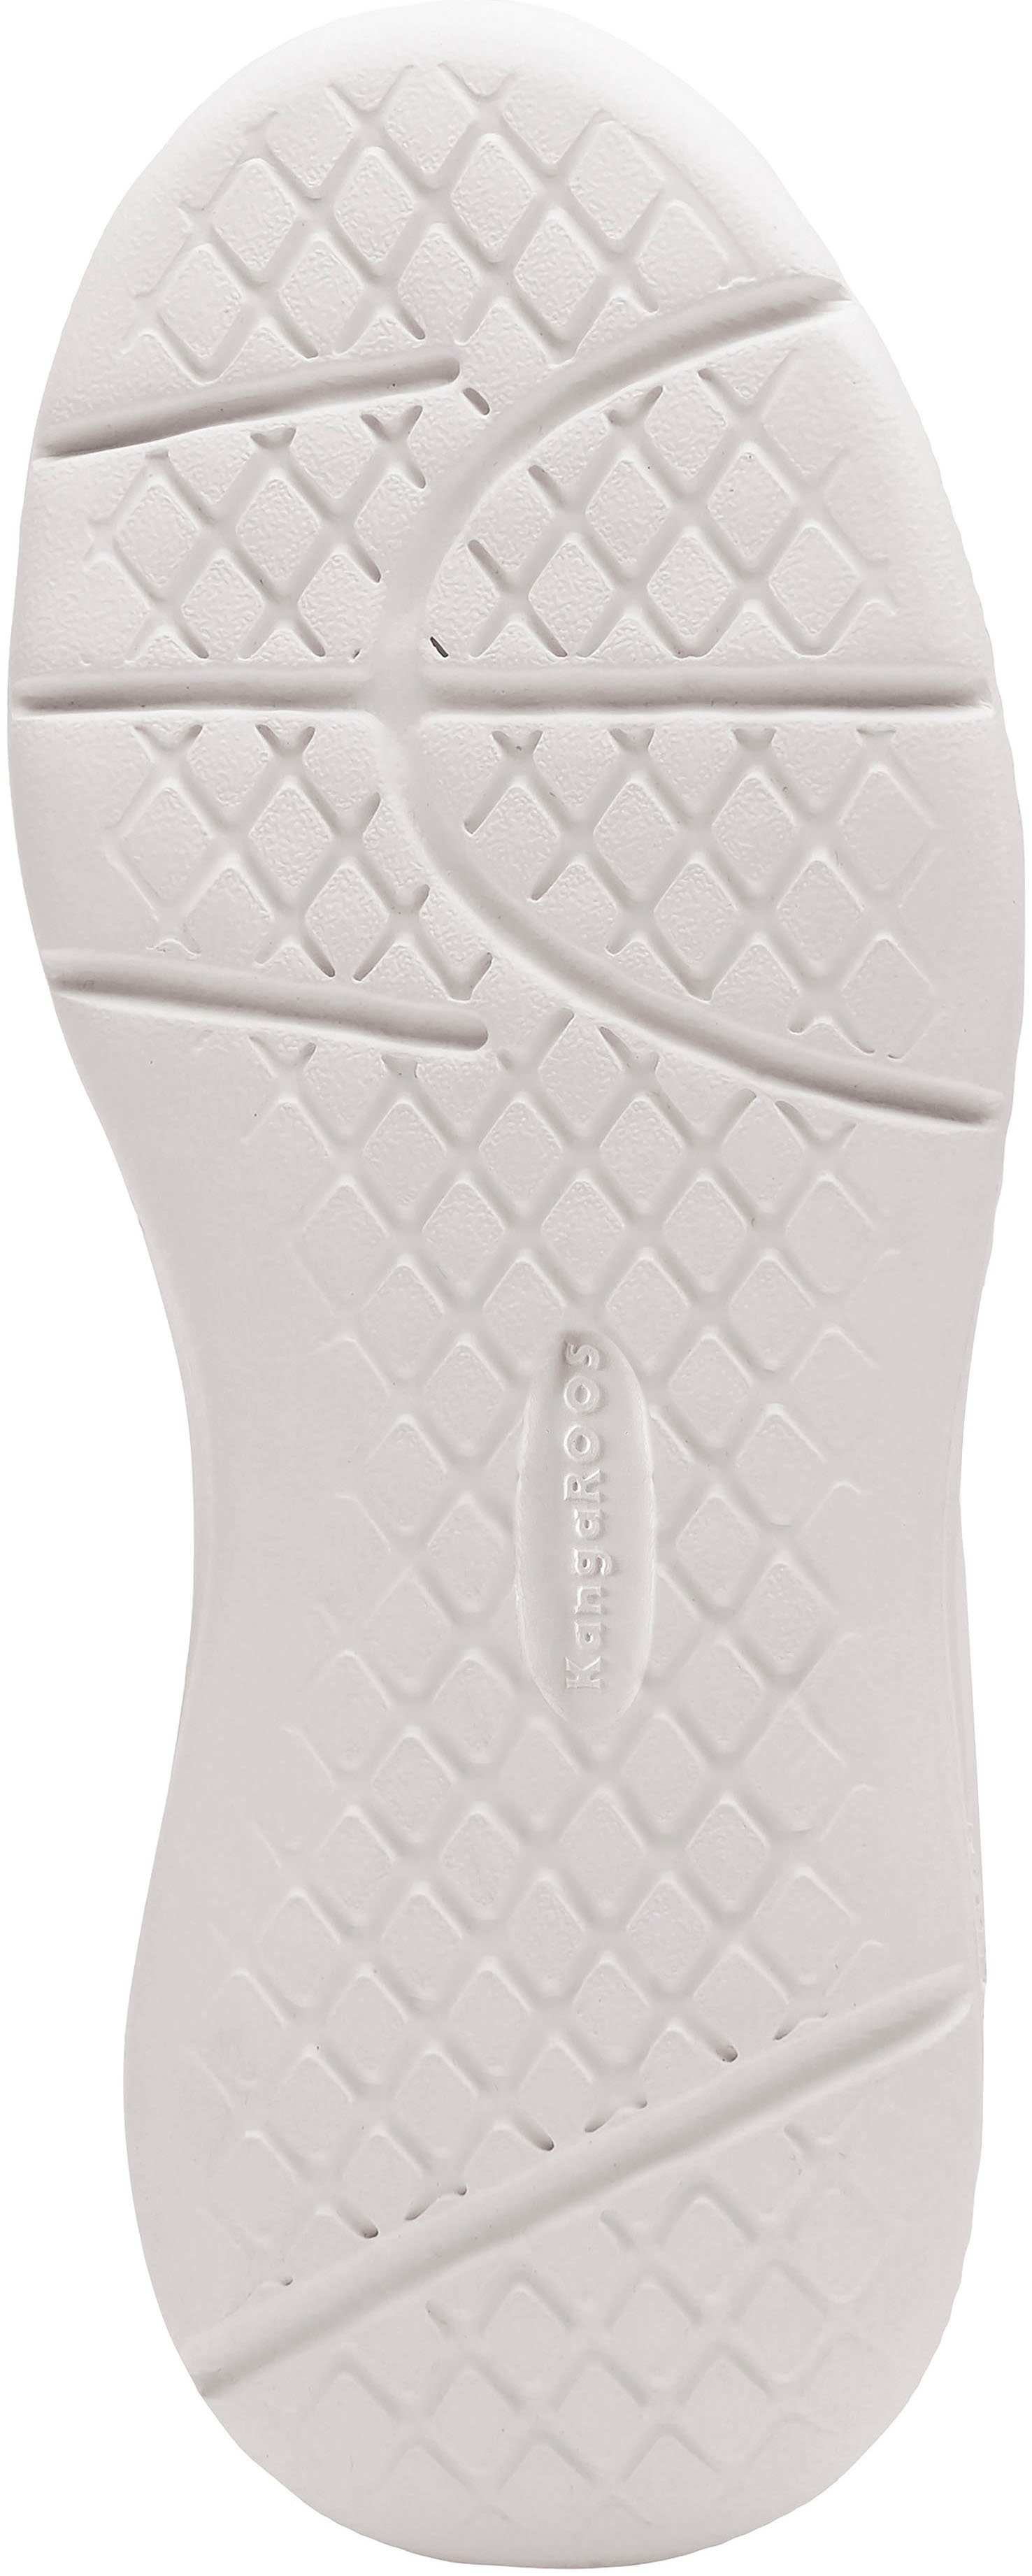 K-Ico schwarz-weiß mit Sneaker KangaROOS V Klettverschluss